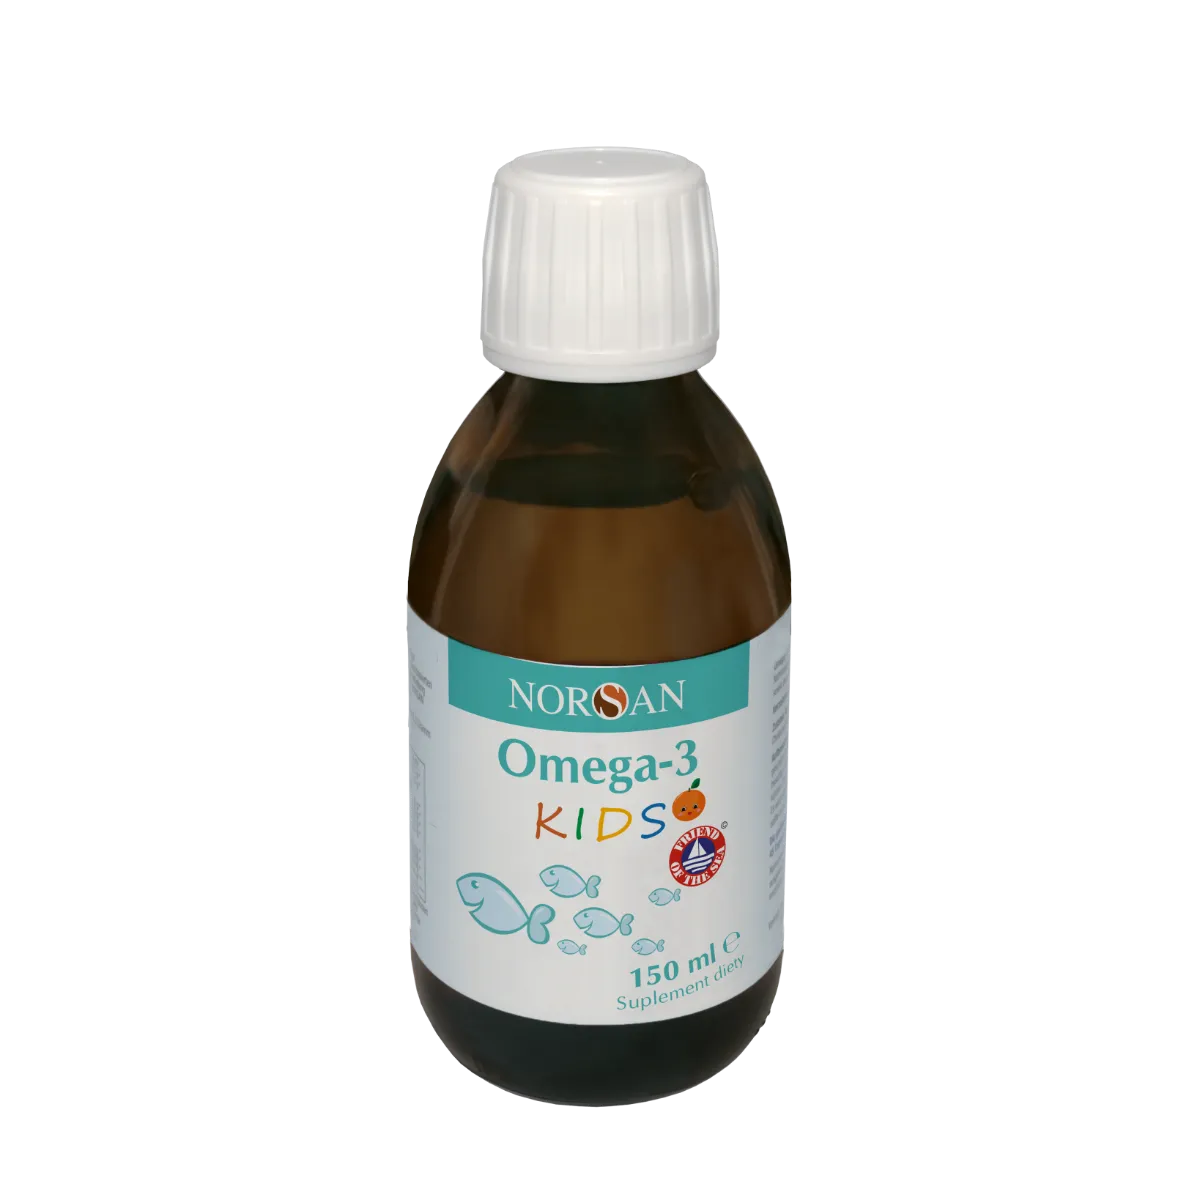 Norsan Omega-3 Kids naturalny olej omega-3 dla dzieci, 150 ml